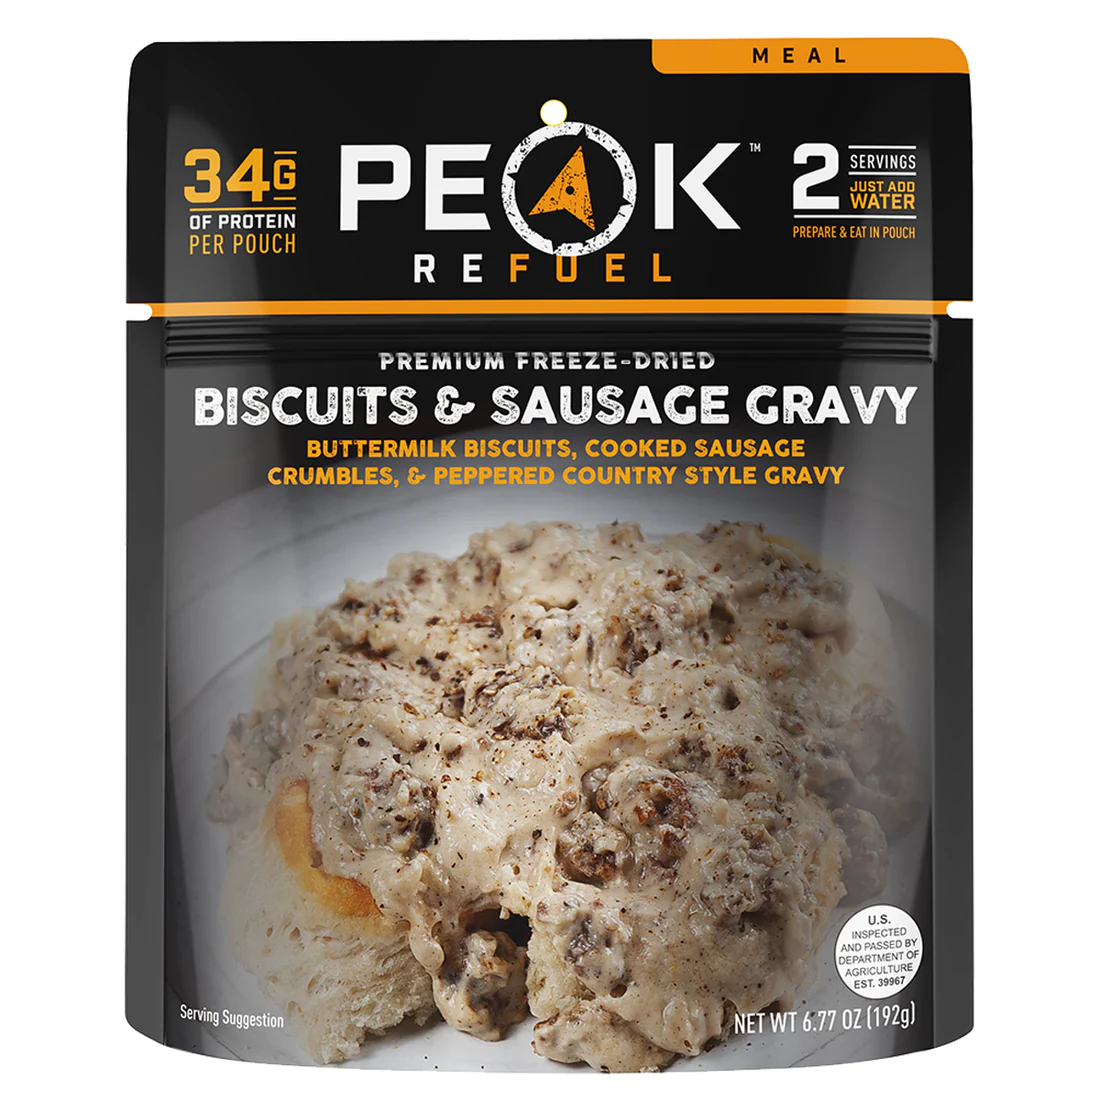 peak-refuel-biscuits-sausage-gravy